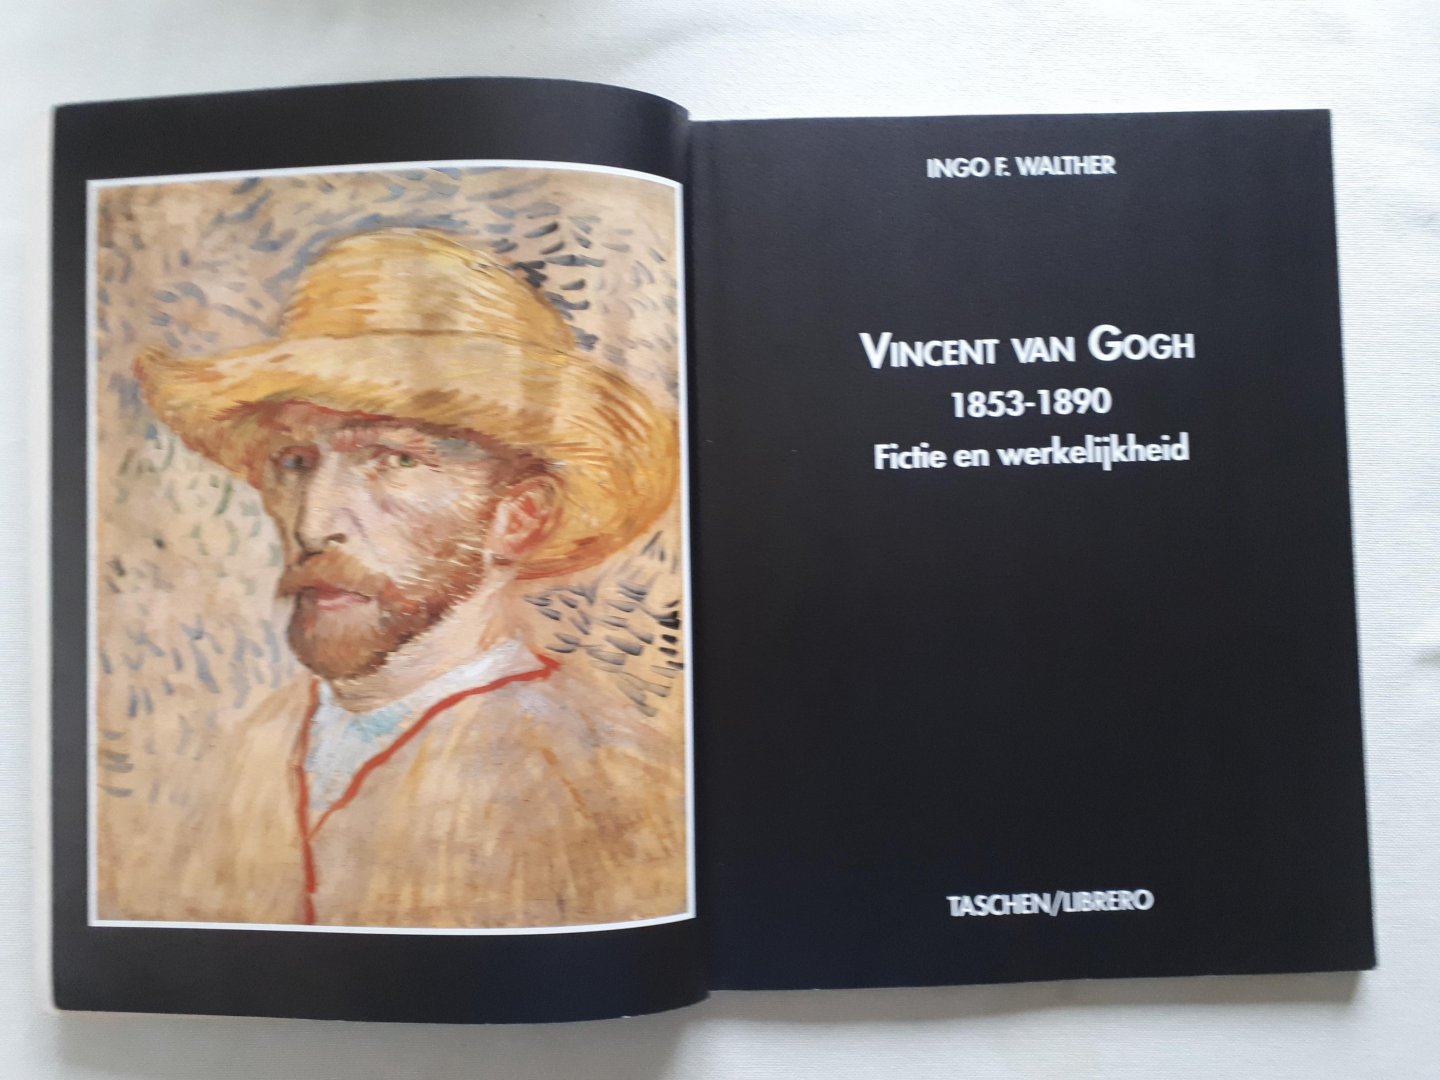 Walther, Ingo F - Vincent van Gogh, 1853-189. Fictie en werkelijkheid